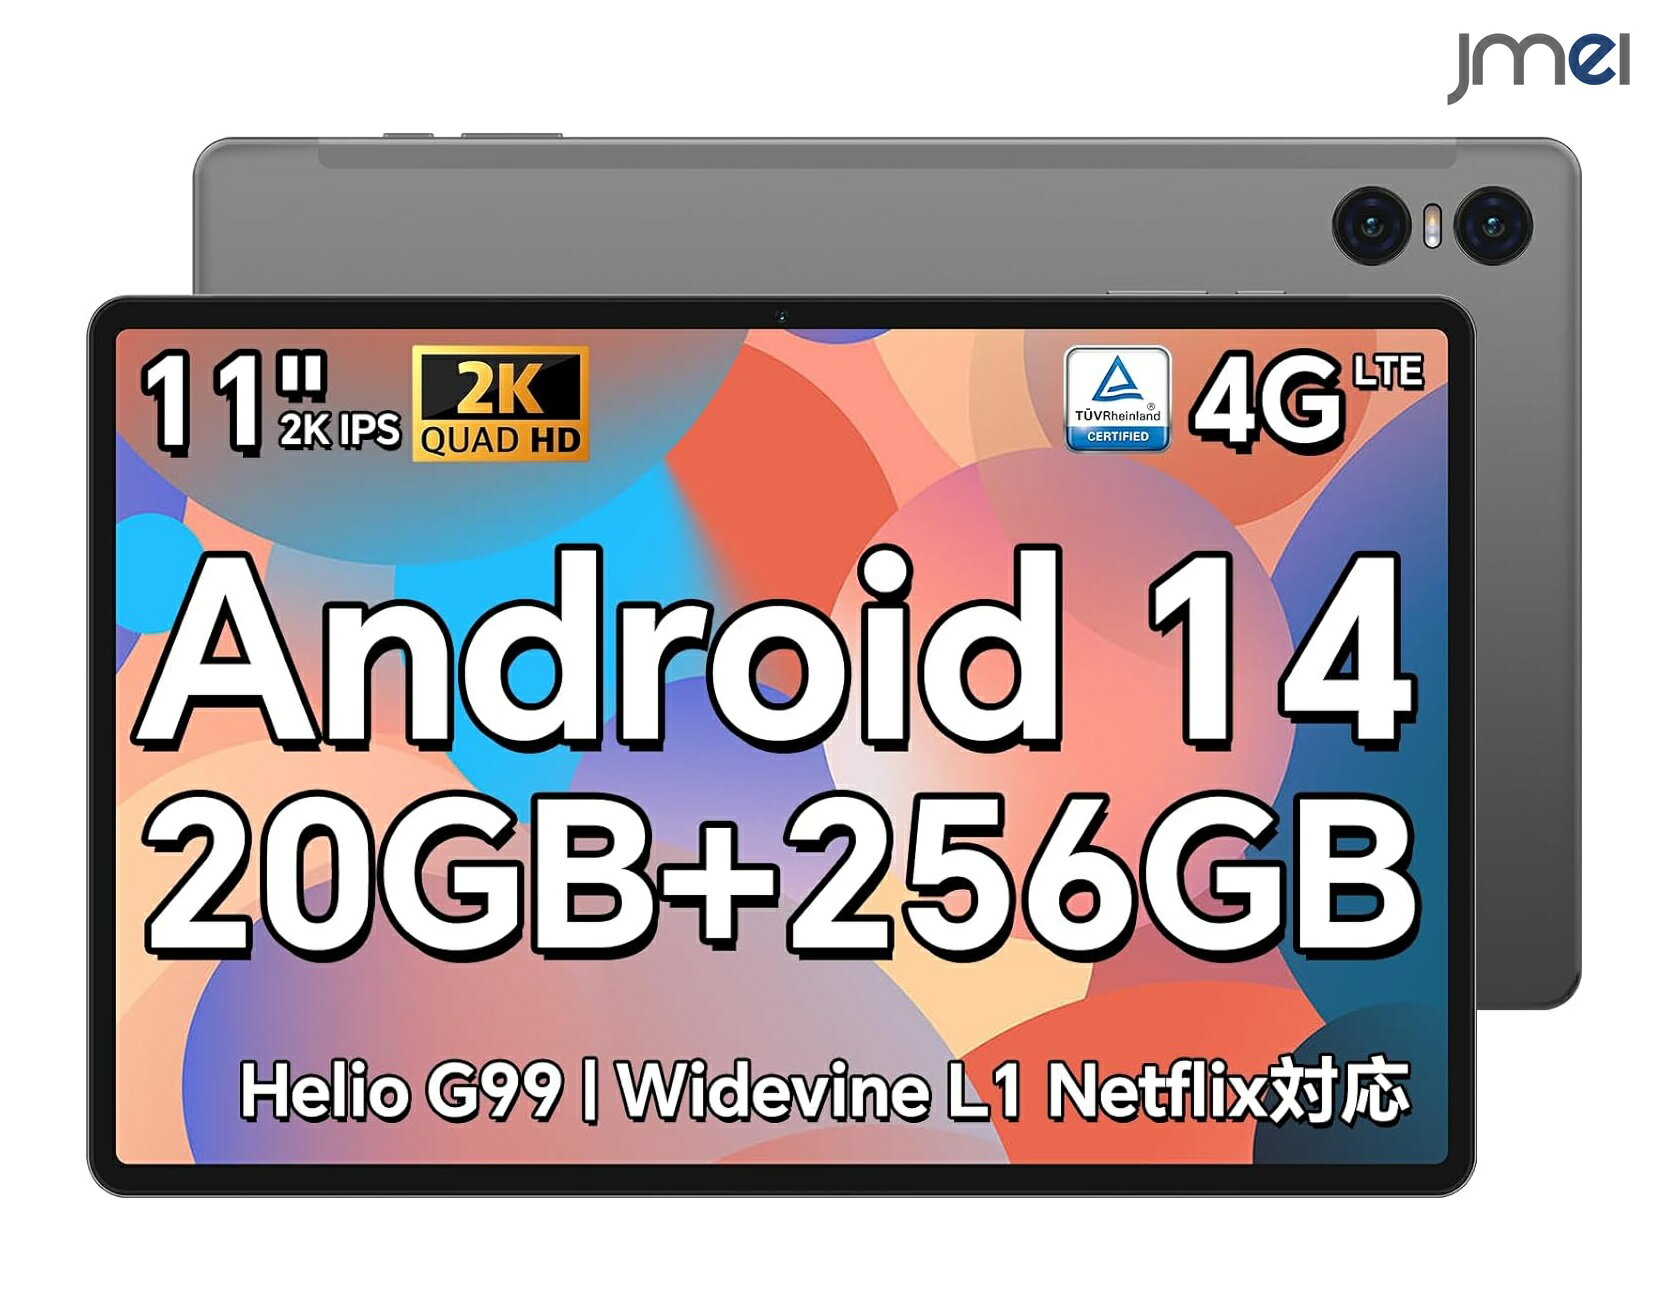 タブレットAndroid タブレット 11インチ Android 14 タブレット 20GB RAM+256GB ROM+1TB拡張 G99 8コアCPU 2.2GHz 11 2K FHD IPS 2000 1200解像度 SIMフリー タブレット4G LTE+5GWiFi +20+0.3MP 8MPカメラ 18W PD急速充電+8000mAh+Type-C+BT5.2 入学 卒業 プレゼント